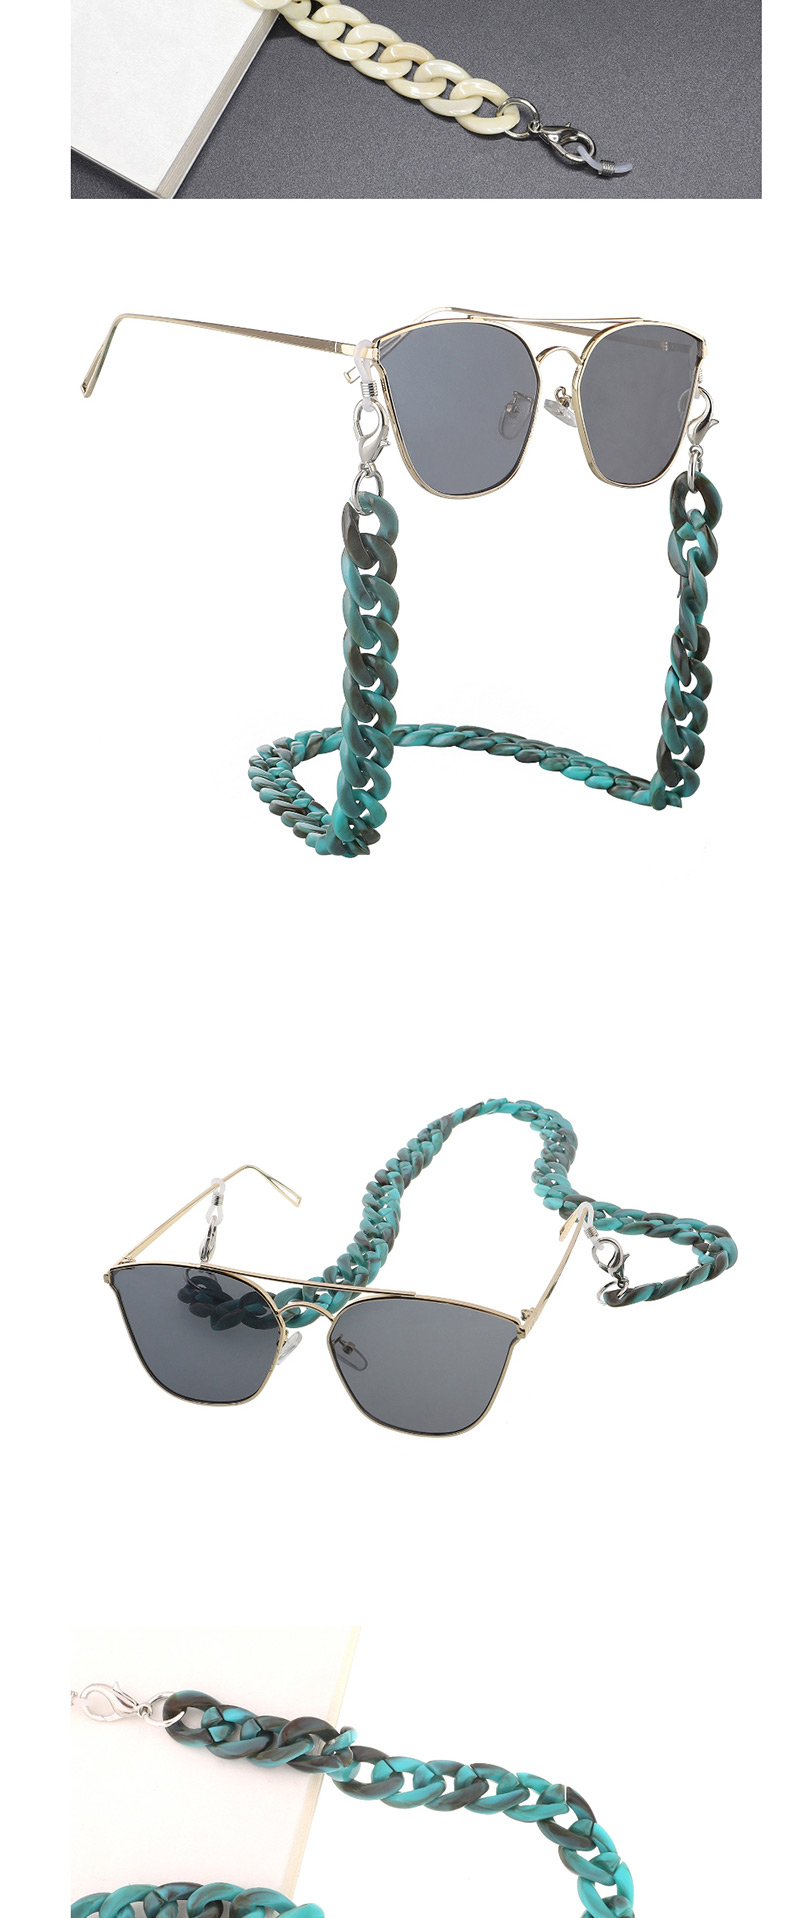 Fashion White Acrylic Glasses Chain,Sunglasses Chain